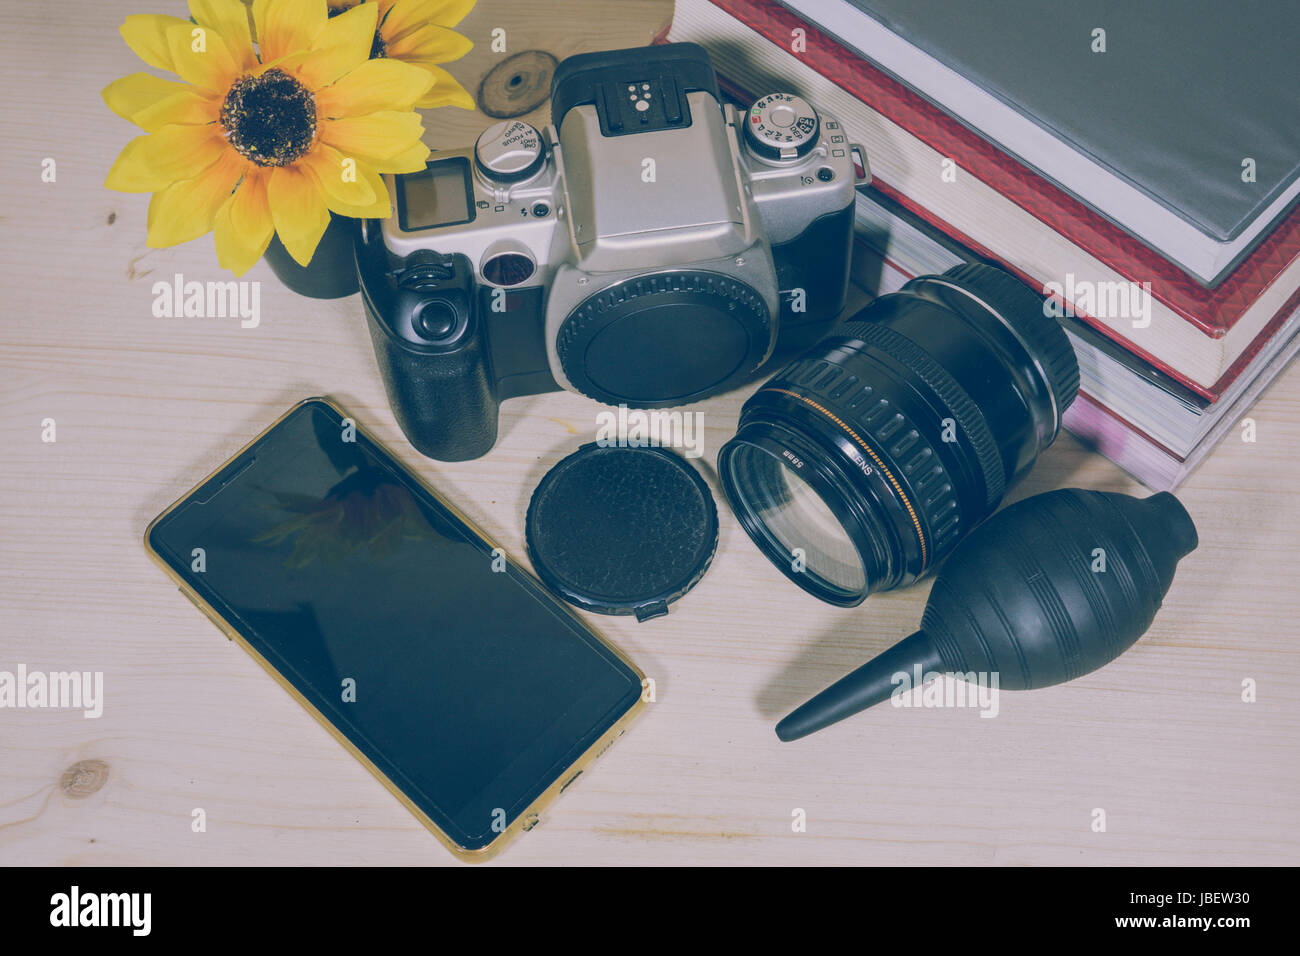 Salvare il lavoro di memorizzazione di viaggio racconto di viaggio con telecamera e telefono Foto Stock